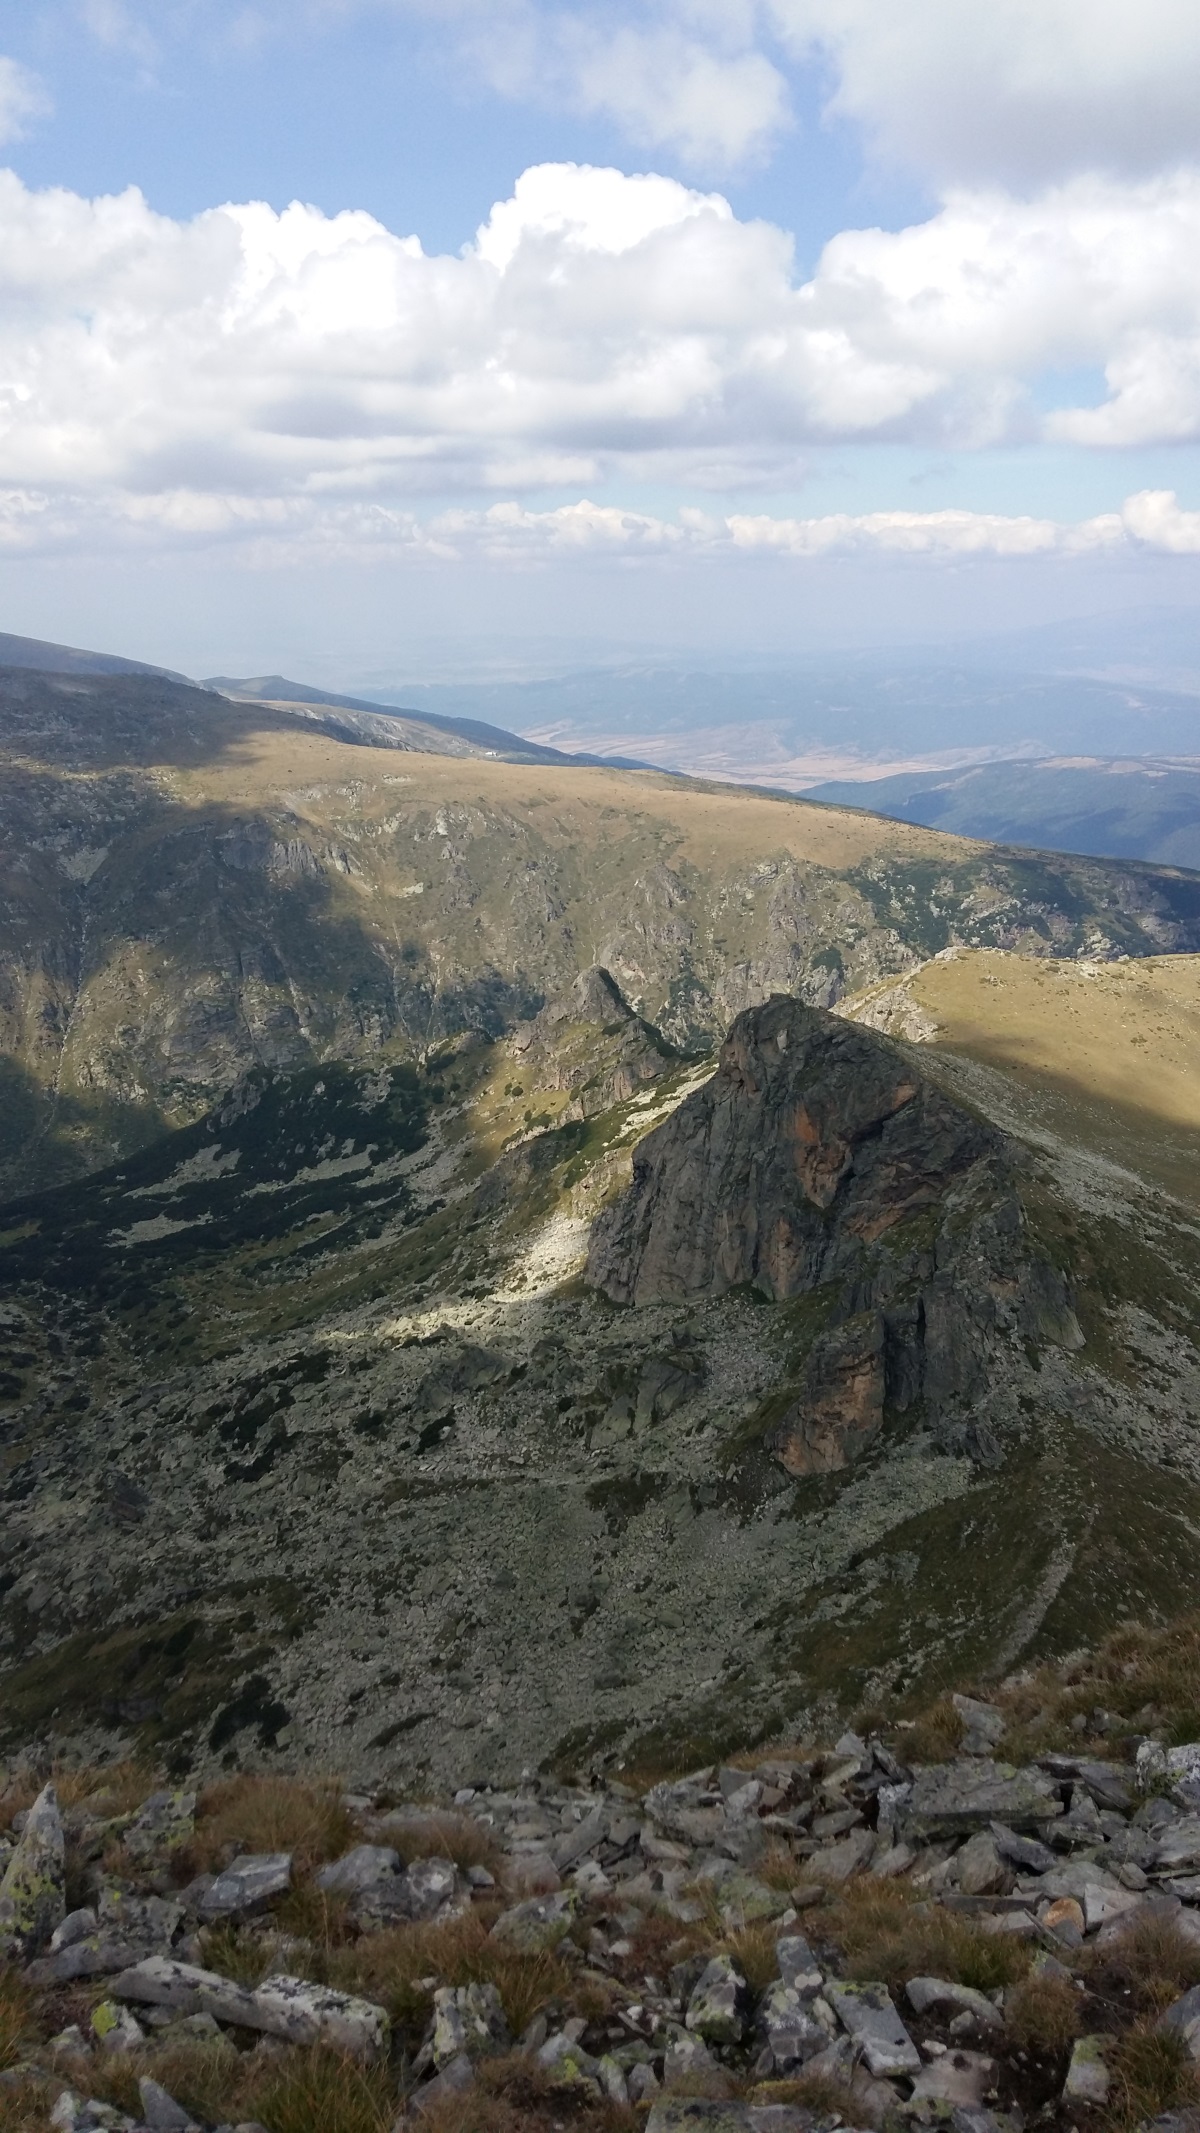 Мальовица е името на връх в северозападната част на планина Рила. Върхът е висок 2729 м. Името на върха е свързано с Мальо войвода – борец срещу поробителите, загинал според преданието нейде в Мальовишката долина.